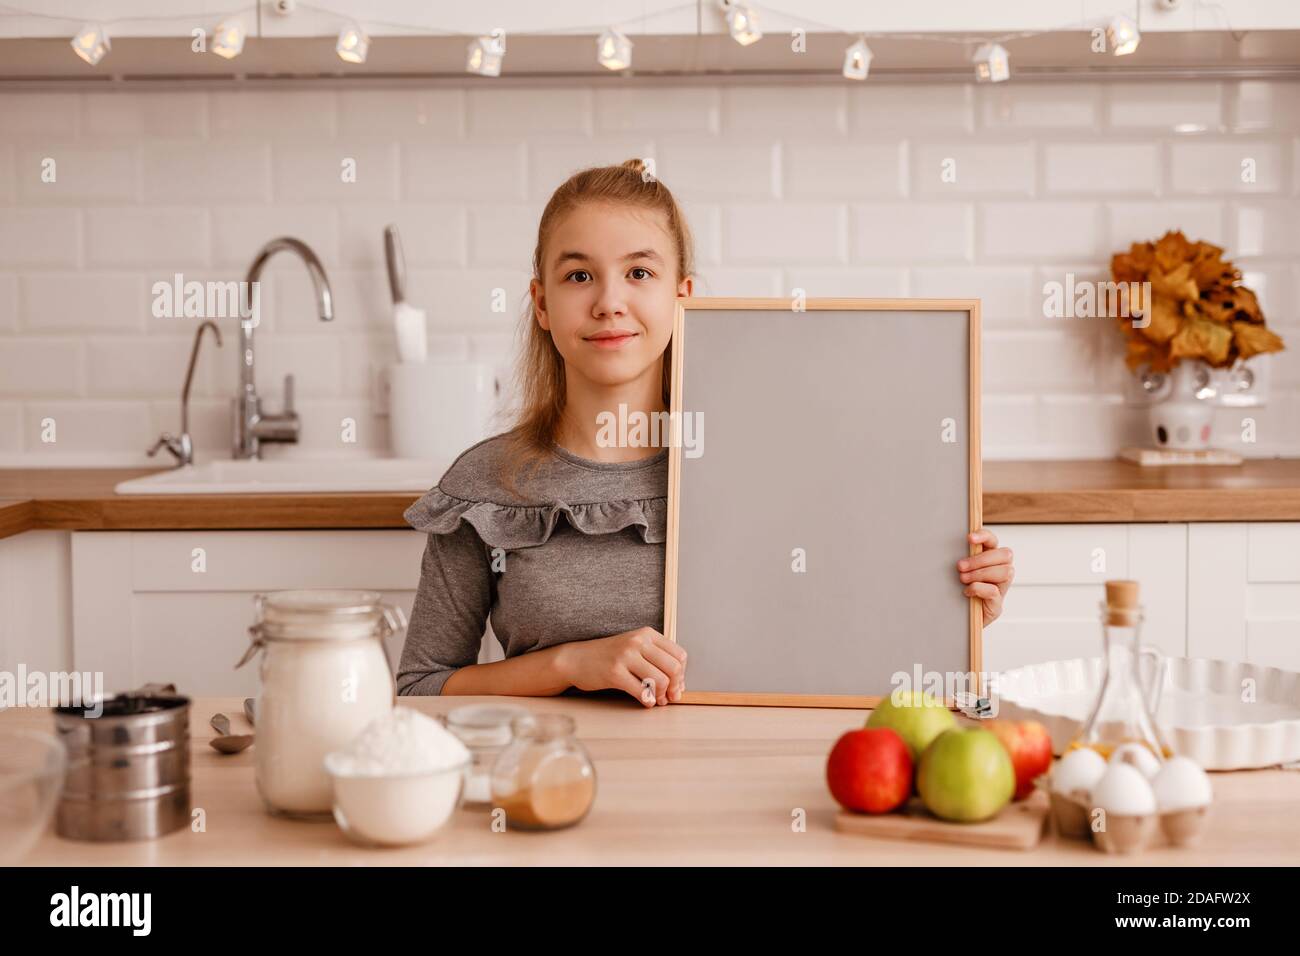 Teenager-Mädchen in einem grauen Kleid wird kochen Ein traditioneller Apfelkuchen in der neuen Küche und hält Ein leeres Holzregal mit grauem Hintergrund mit einem Stockfoto